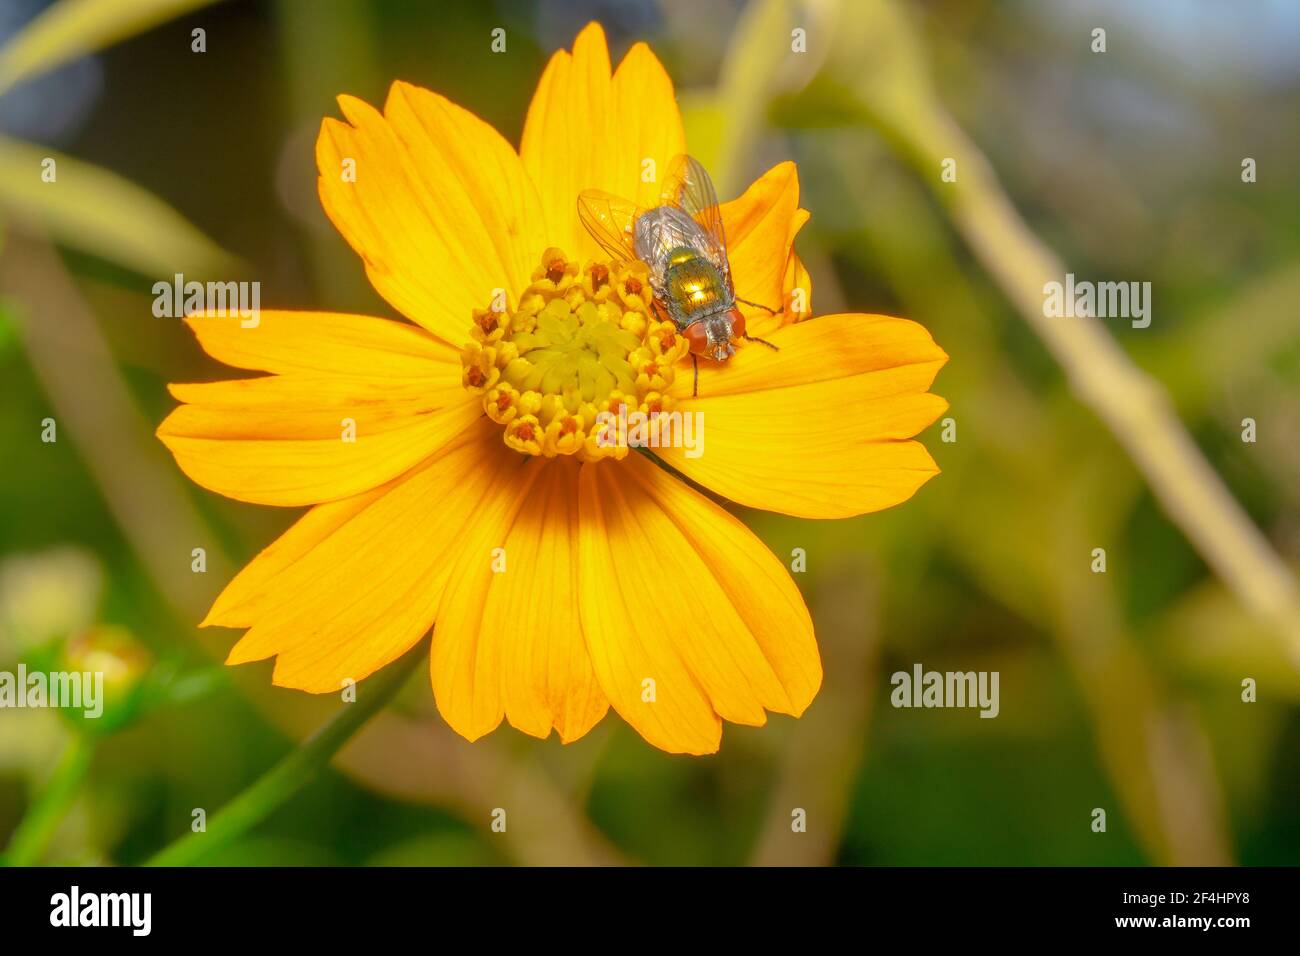 Orange gerbera daisy flower and a shiny housefly Stock Photo